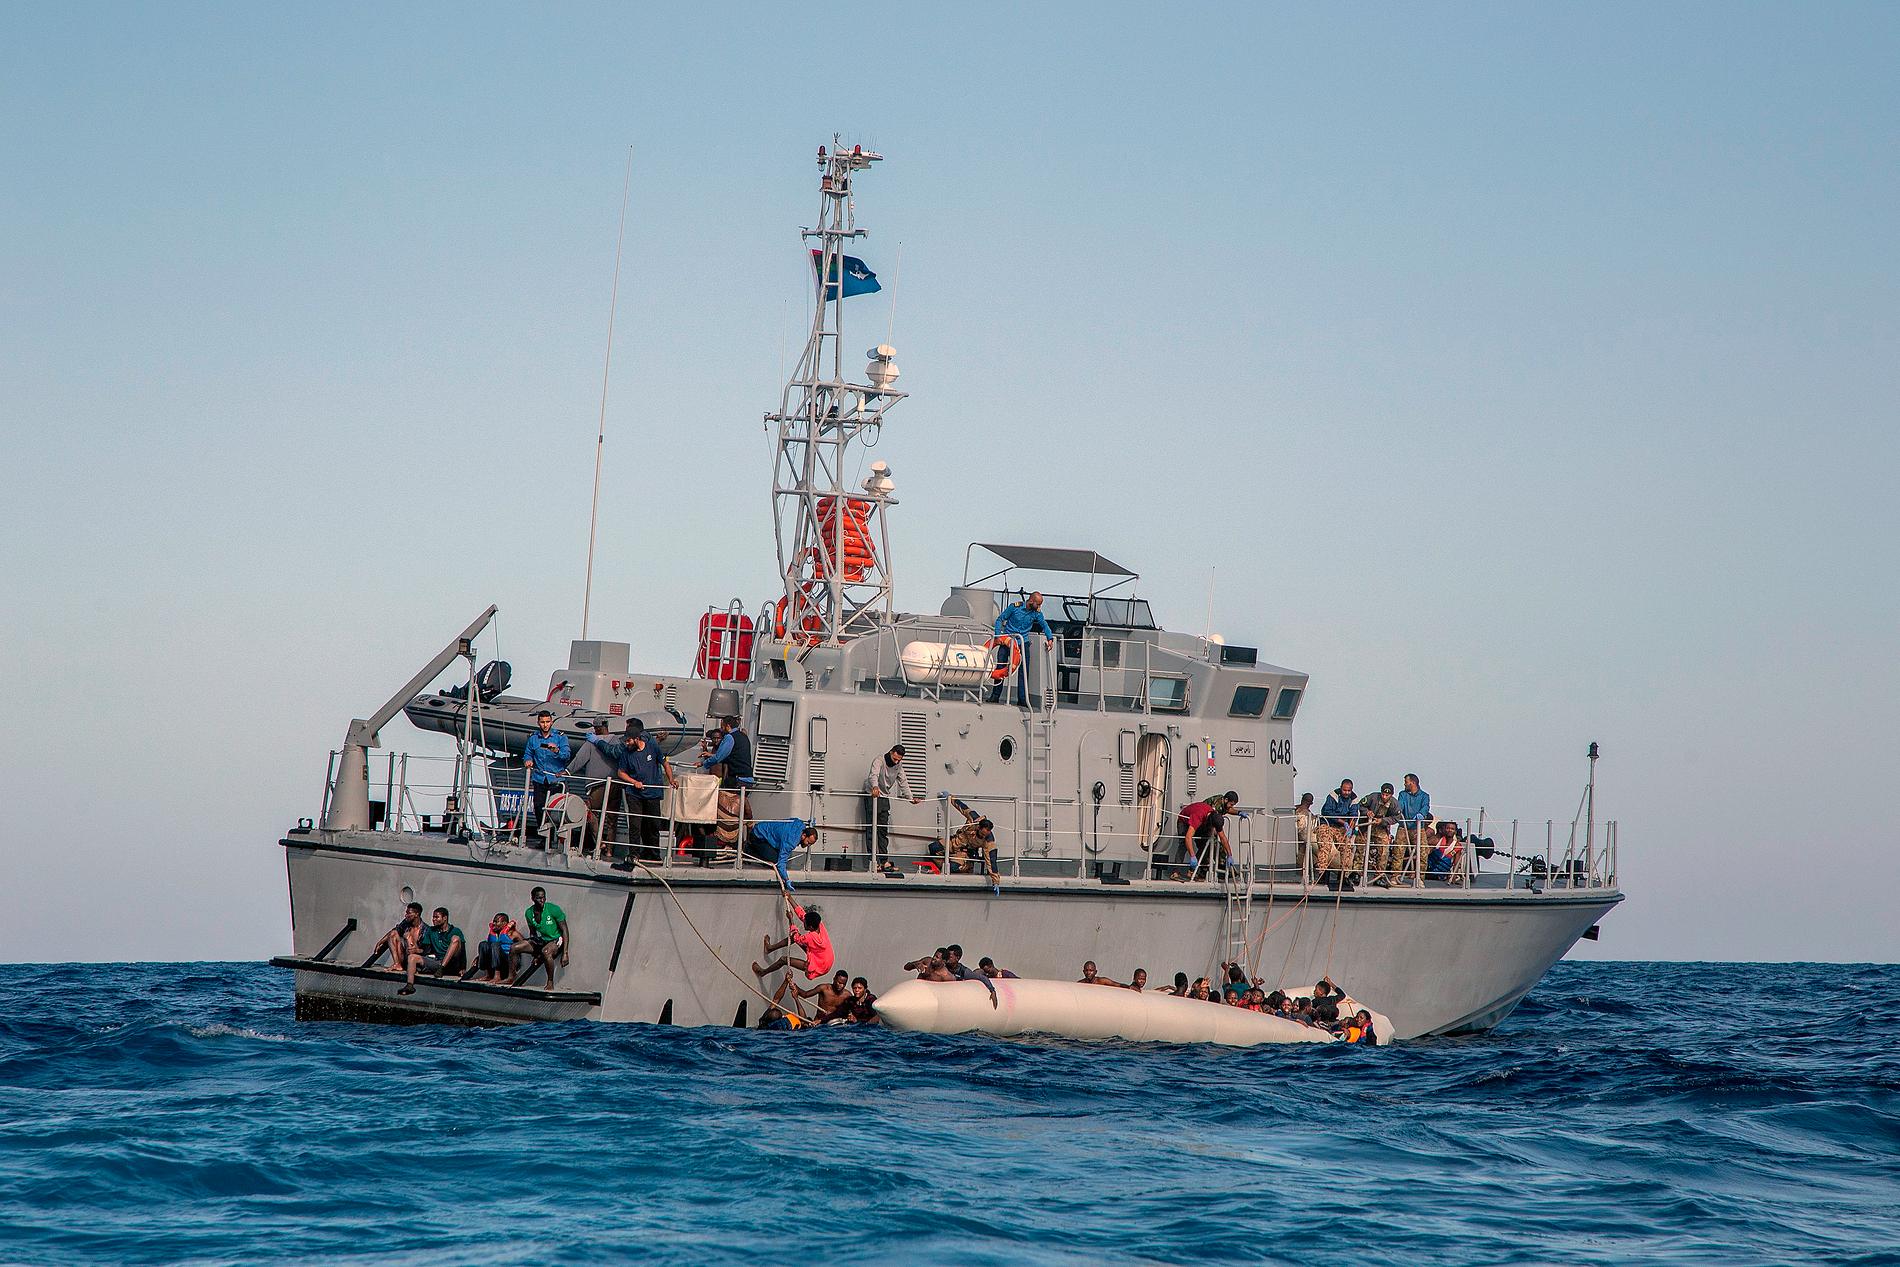 Den libyska kustbevakningen började hjälpa migranter från den sjunkande gummibåten, men enligt uppgifter från den tyska hjälporganisationen Sea watch behandlade de människorna mycket illa.